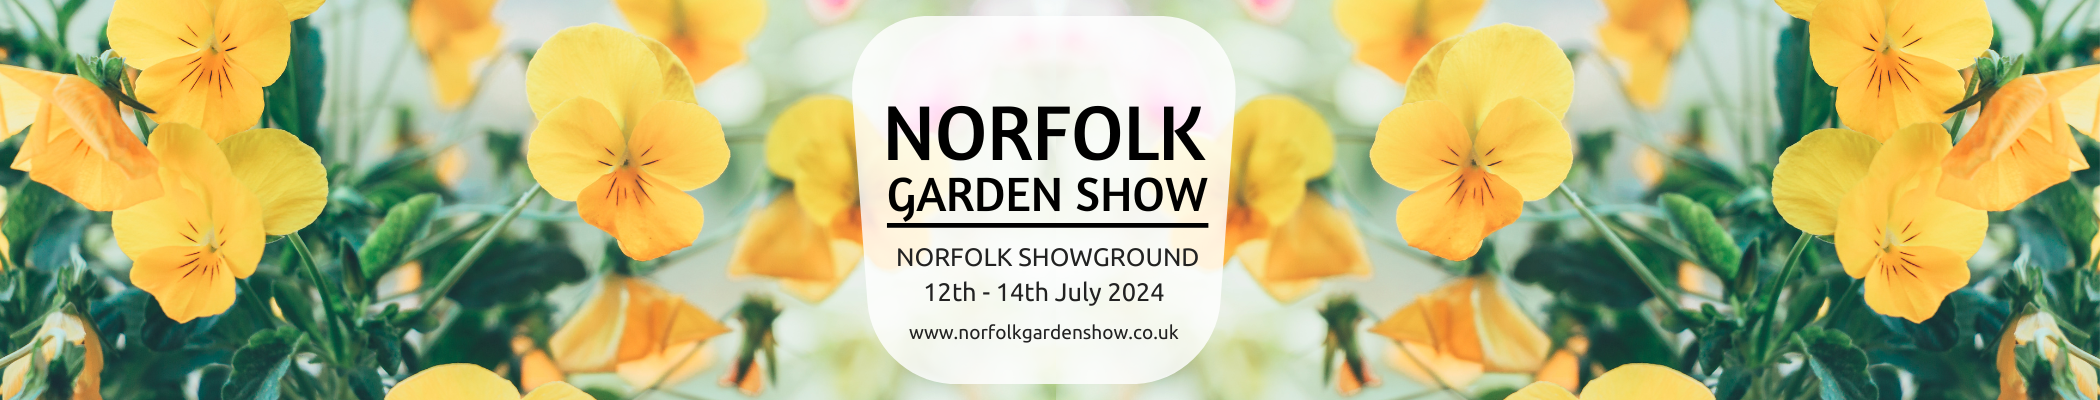 the norfolk garden show